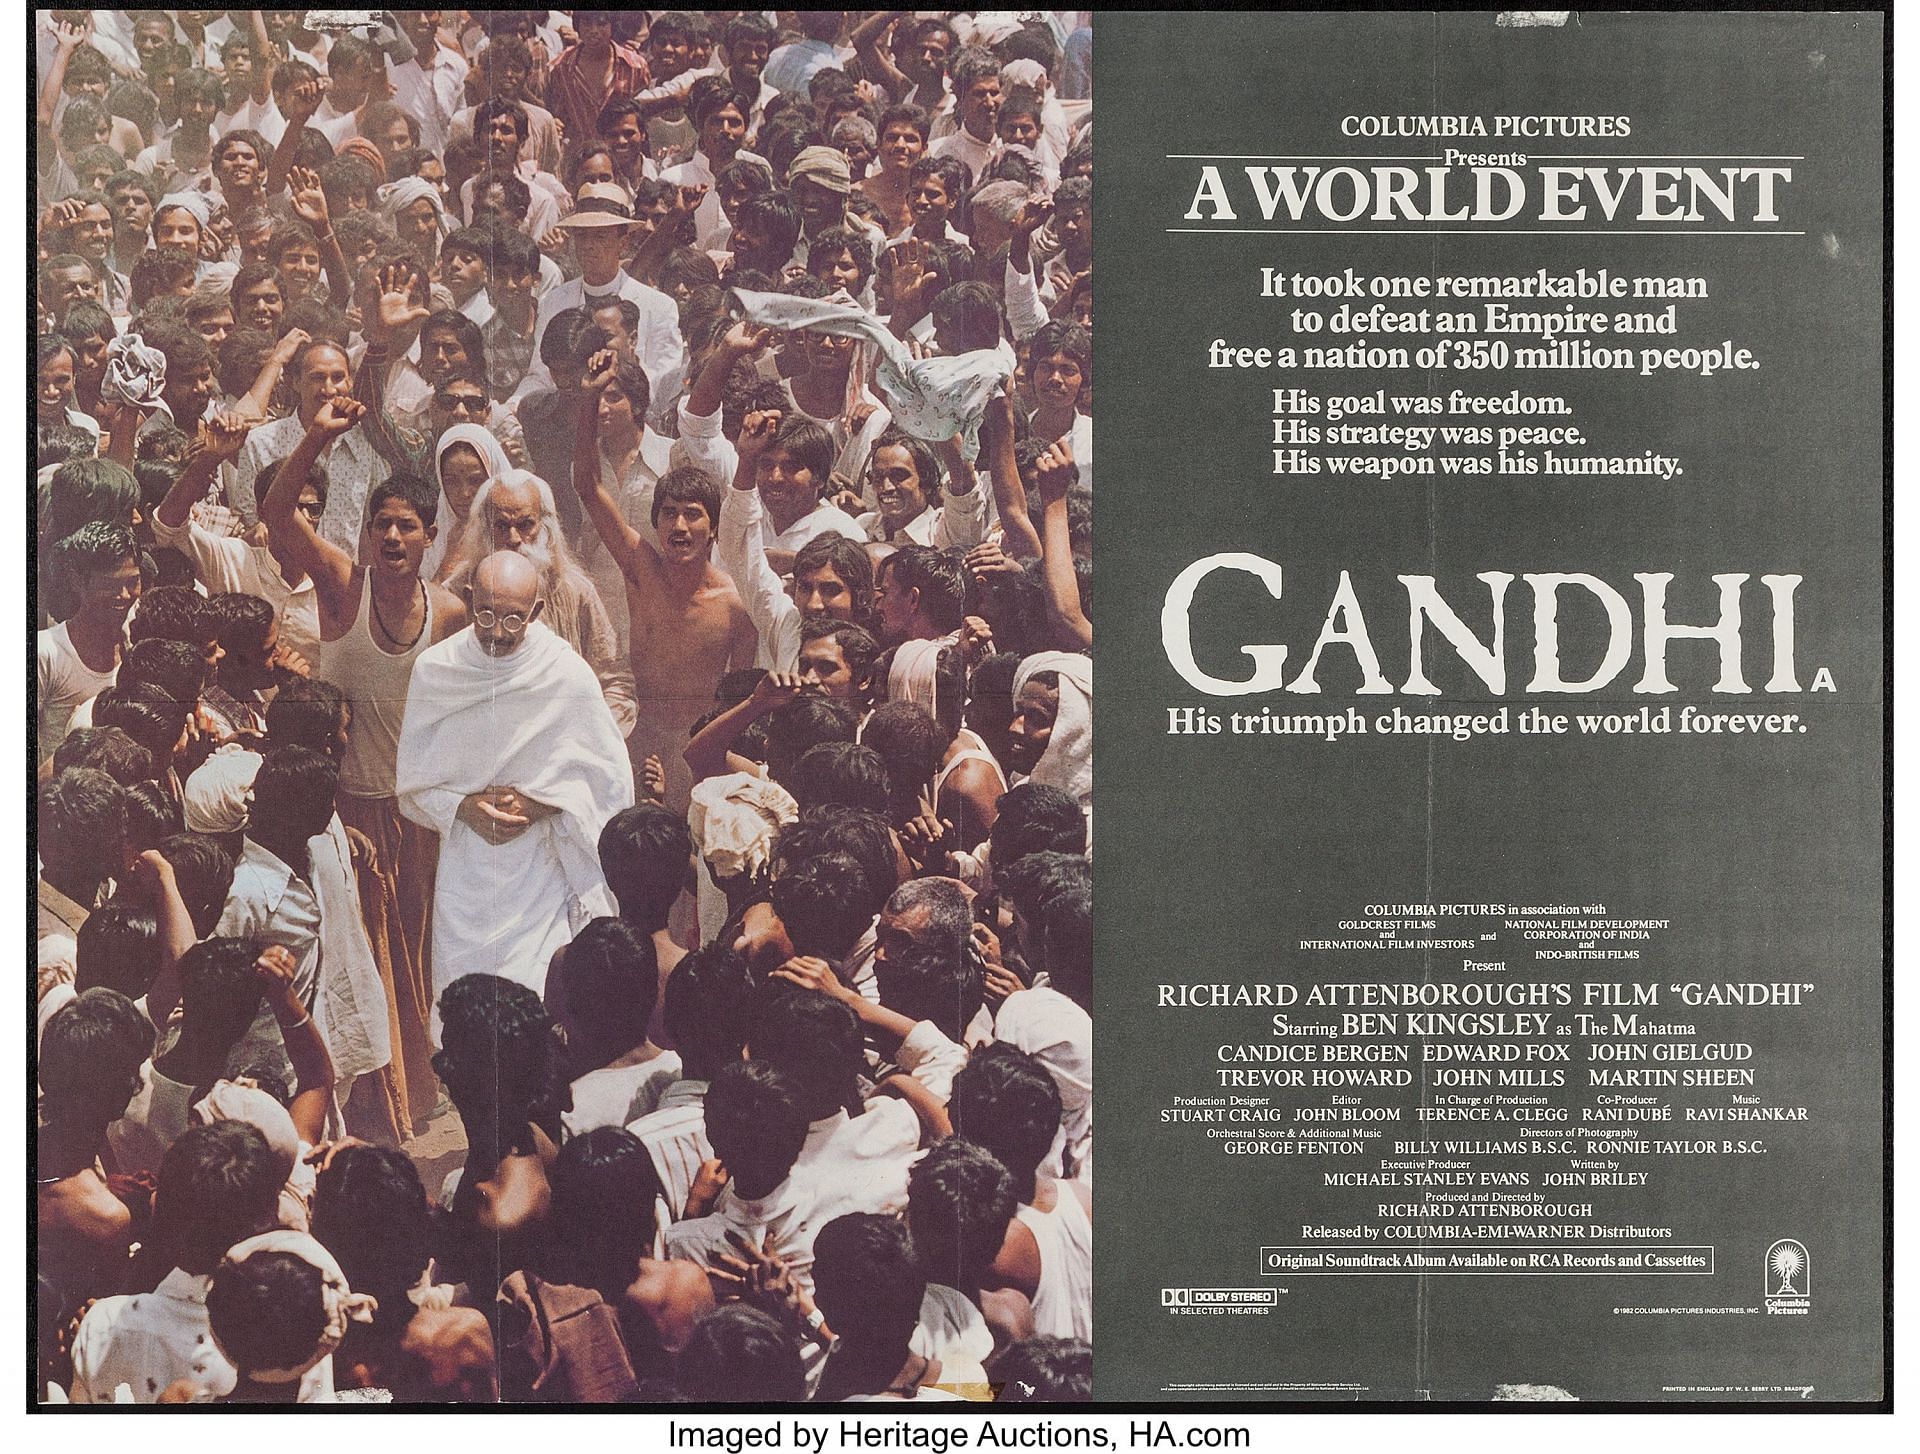 Gandhi (Image via Columbia Pictures)